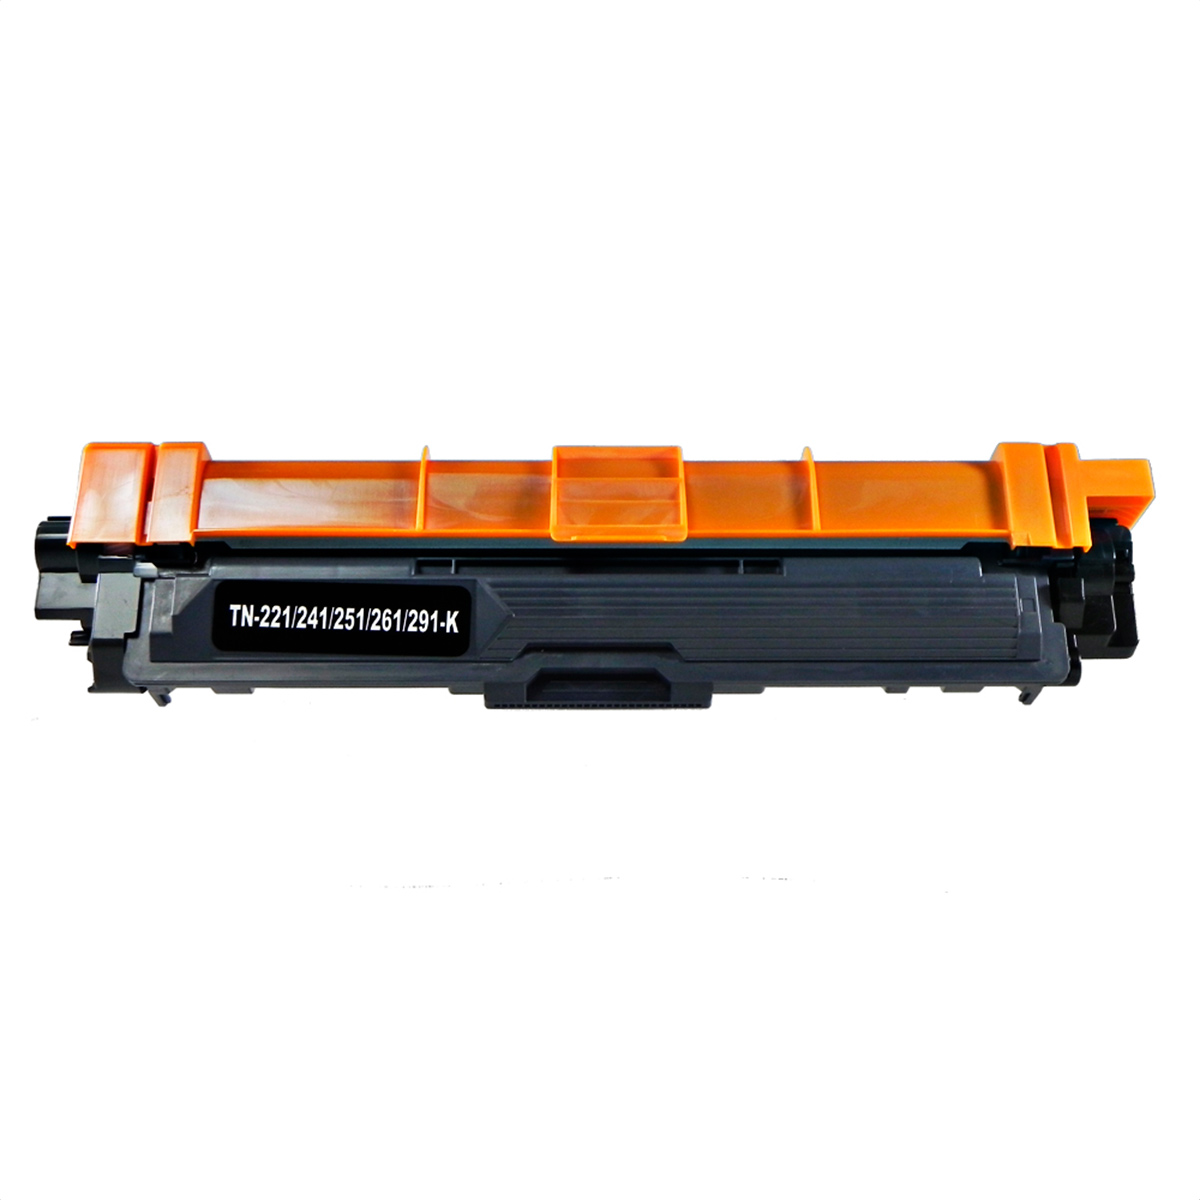 Kit Toner Compatível TN210 HL3040 MFC9010 Preto e Coloridos até 2,2k páginas